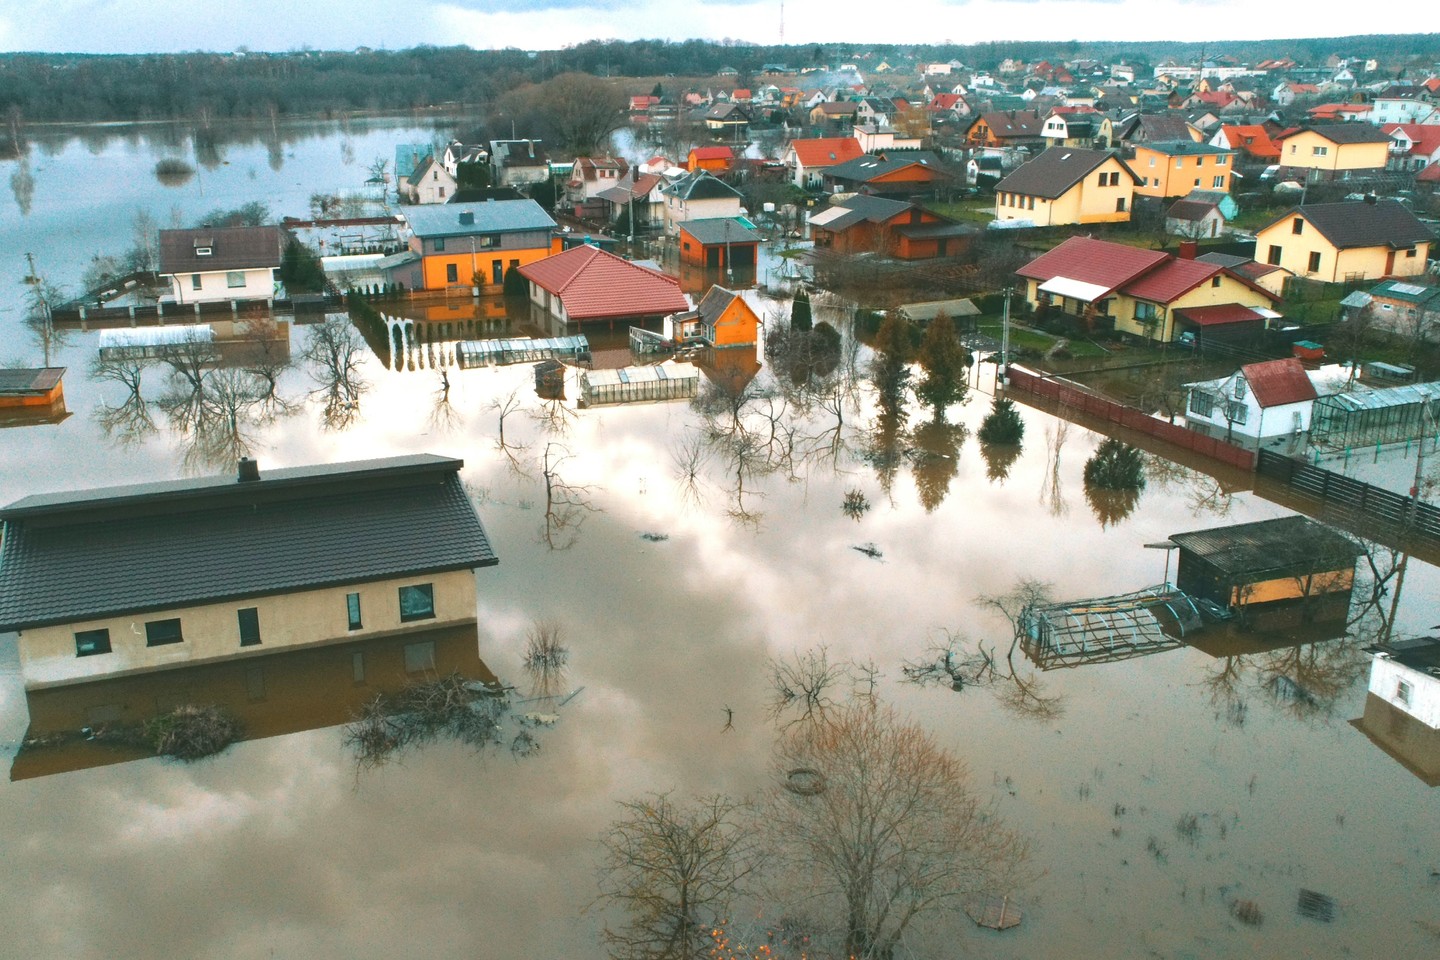  Purmalių miestelis, esantis šalia Klaipėdos, kenčia nuo potvynio. <br> R. Žalgevičiaus nuotr.